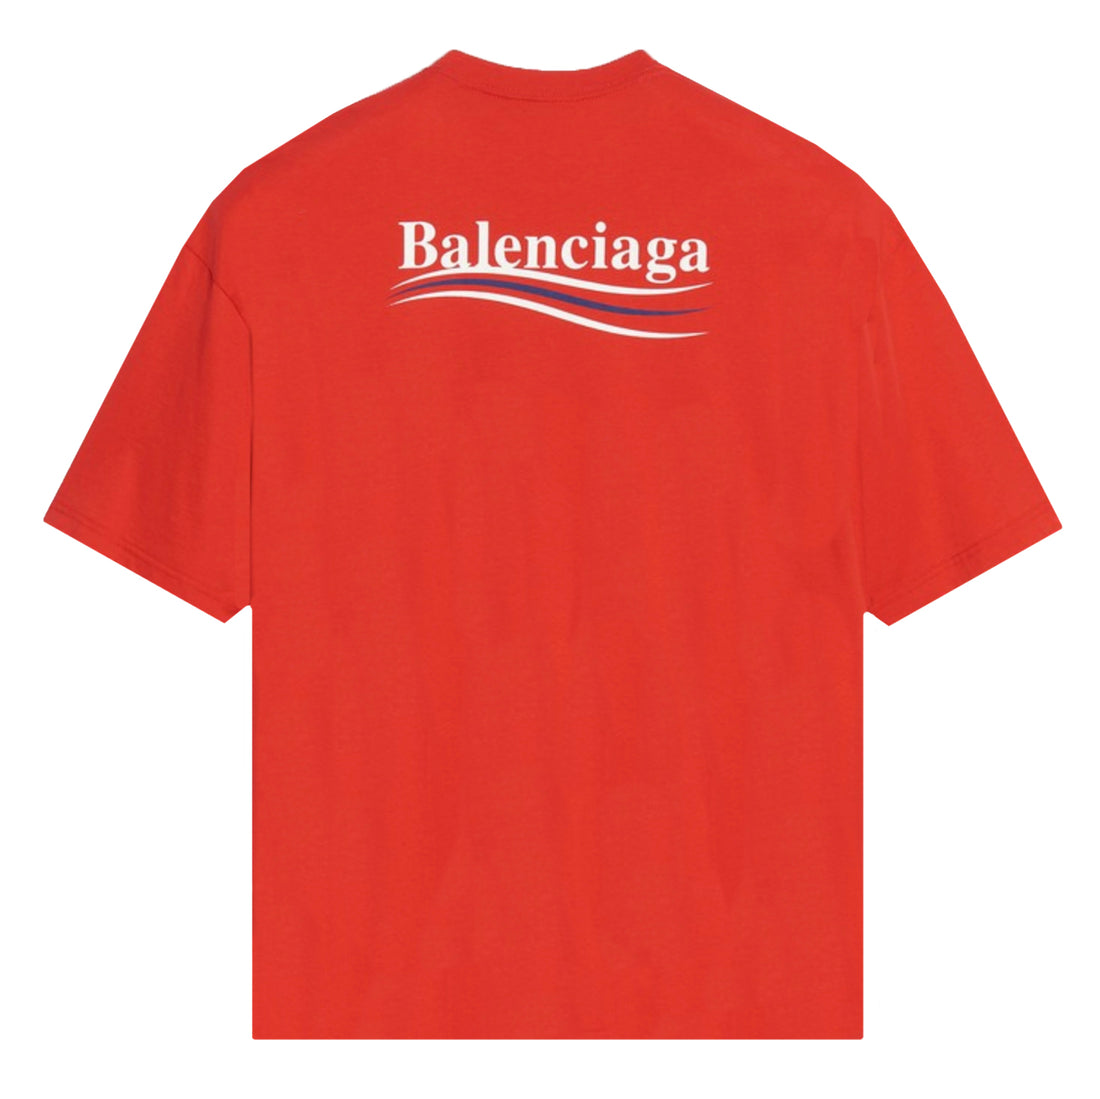 Balenciaga Campaign T-Shirt